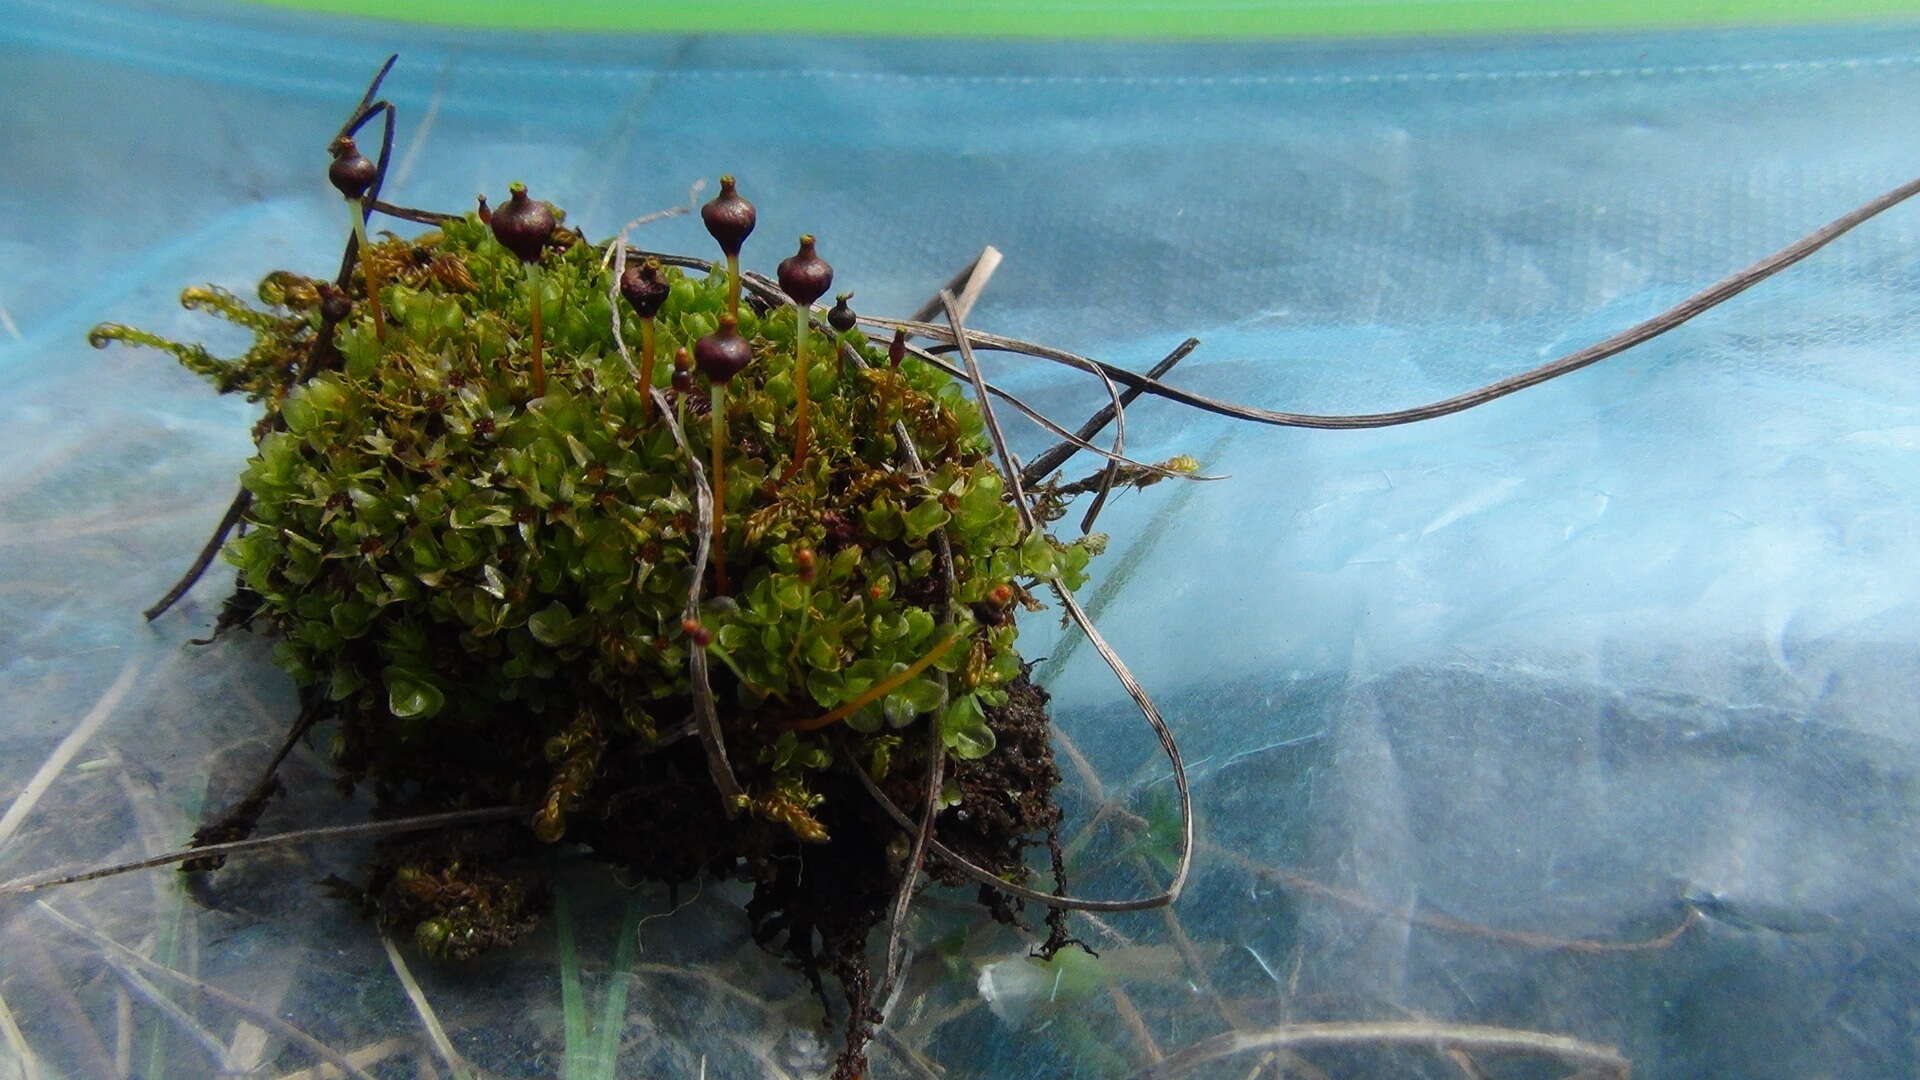 Image of splachnum dung moss